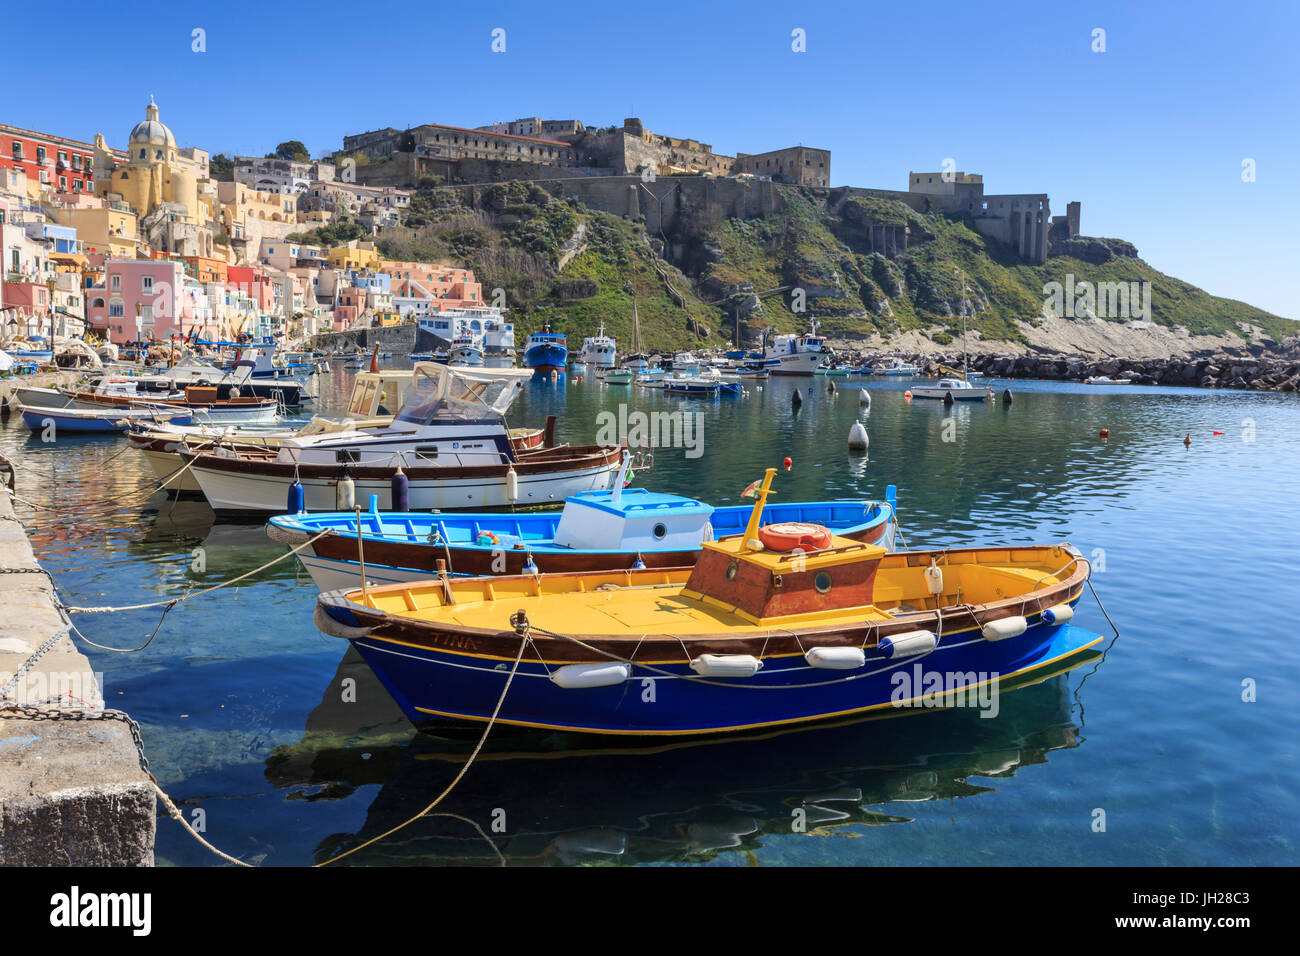 Marina Corricella, bonito pueblo pesquero y coloridas casas, barcos y Terra Murata, Procida Island, la Bahía de Nápoles, Italia Foto de stock